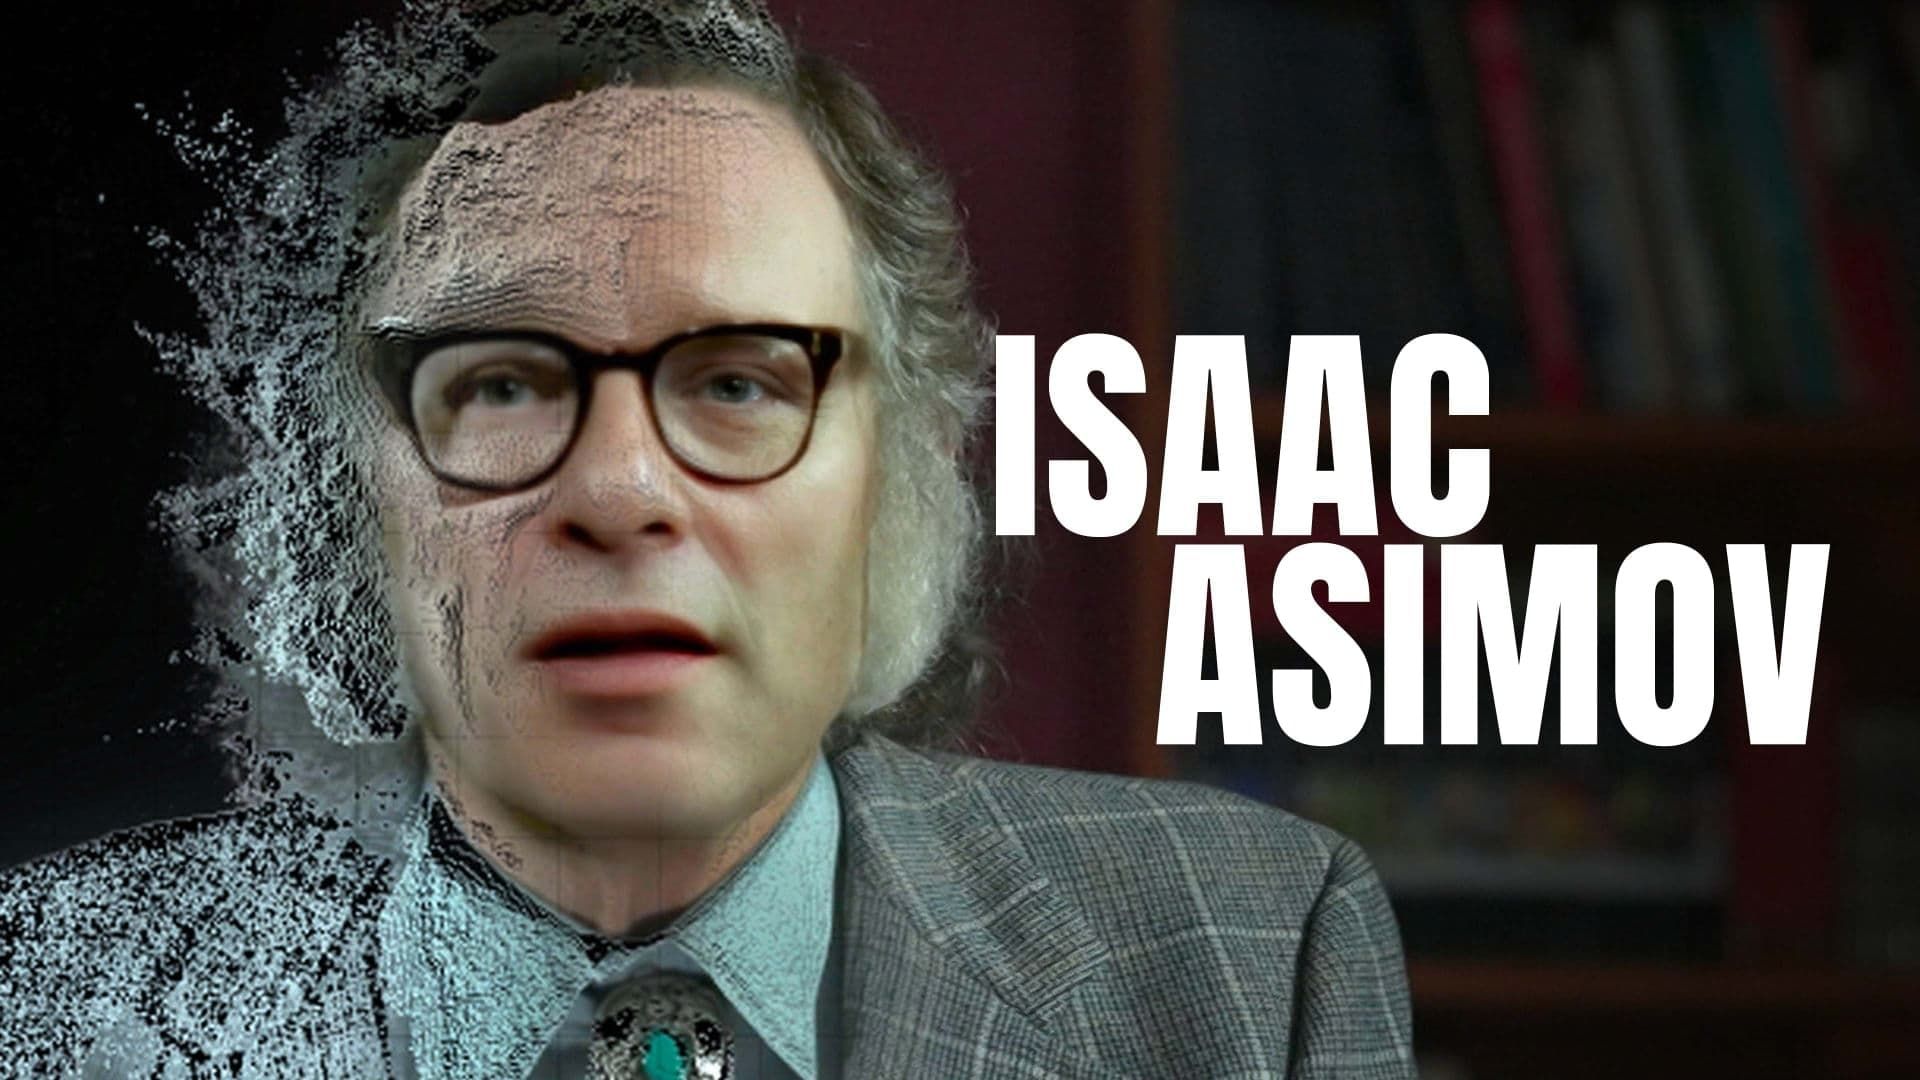 Cubierta de Isaac Asimov, un mensaje para el futuro